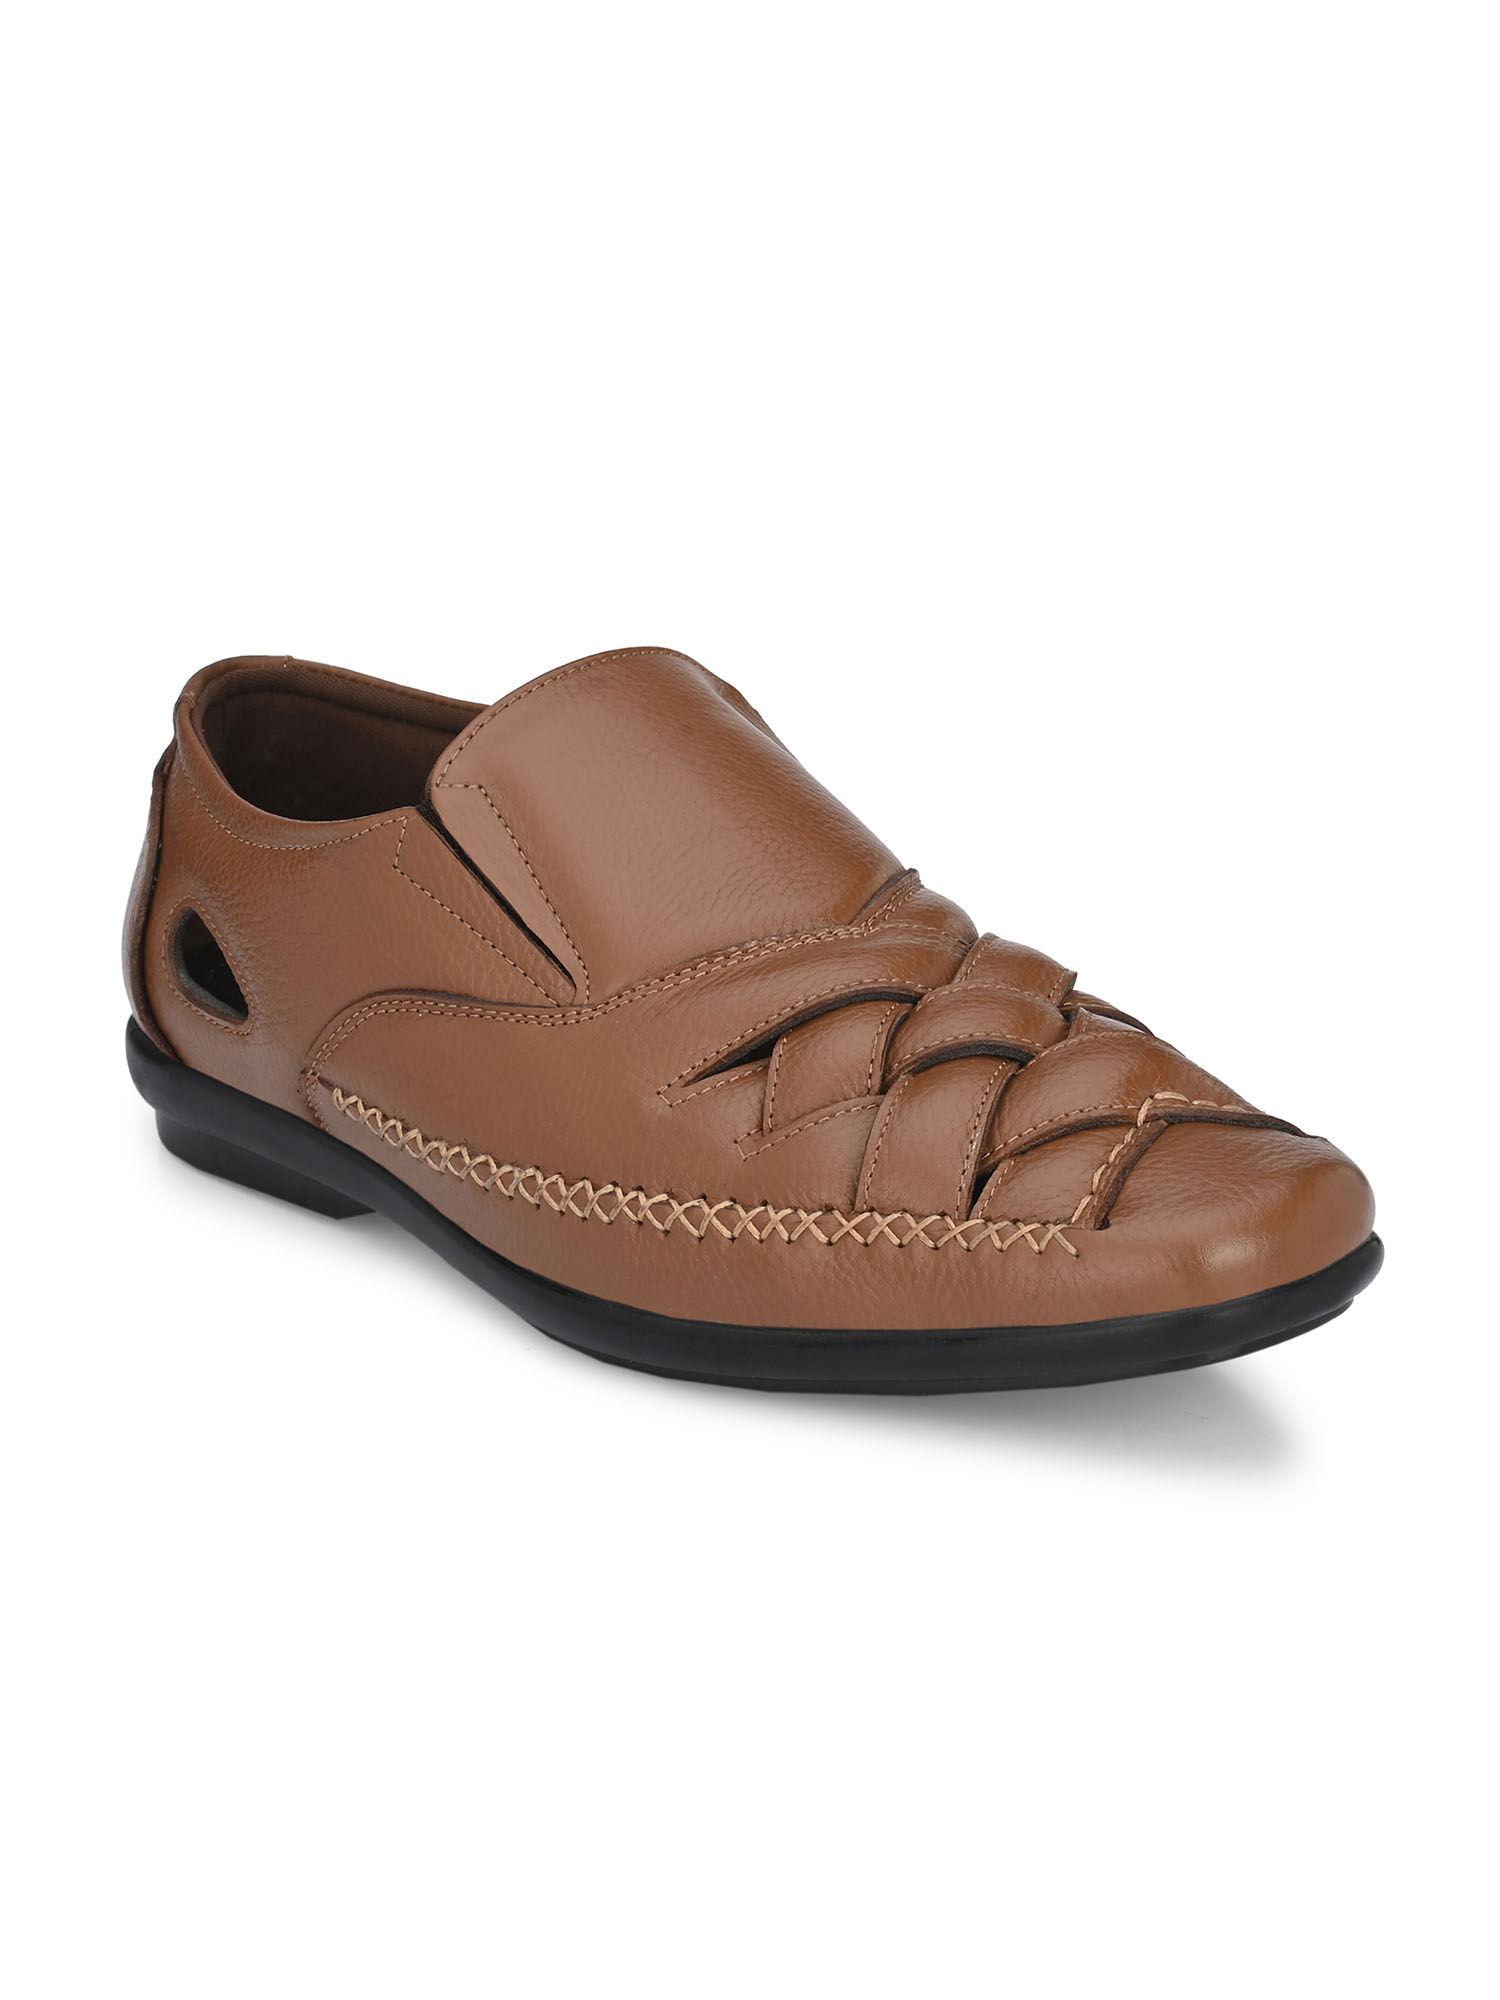 mens brown roman sandals